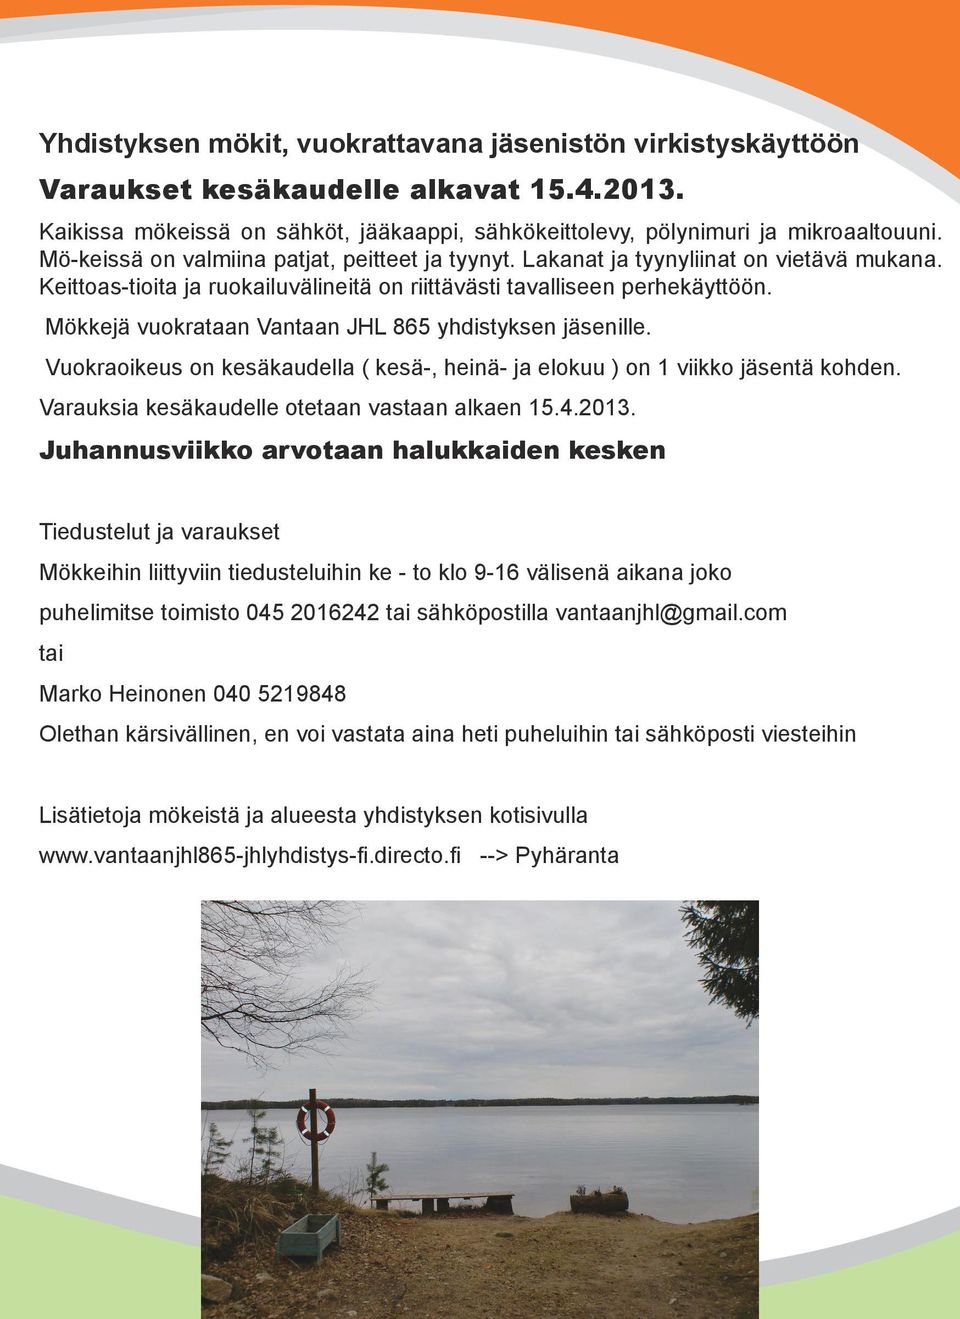 Mökkejä vuokrataan Vantaan JHL 865 yhdistyksen jäsenille. Vuokraoikeus on kesäkaudella ( kesä-, heinä- ja elokuu ) on 1 viikko jäsentä kohden. Varauksia kesäkaudelle otetaan vastaan alkaen 15.4.2013.